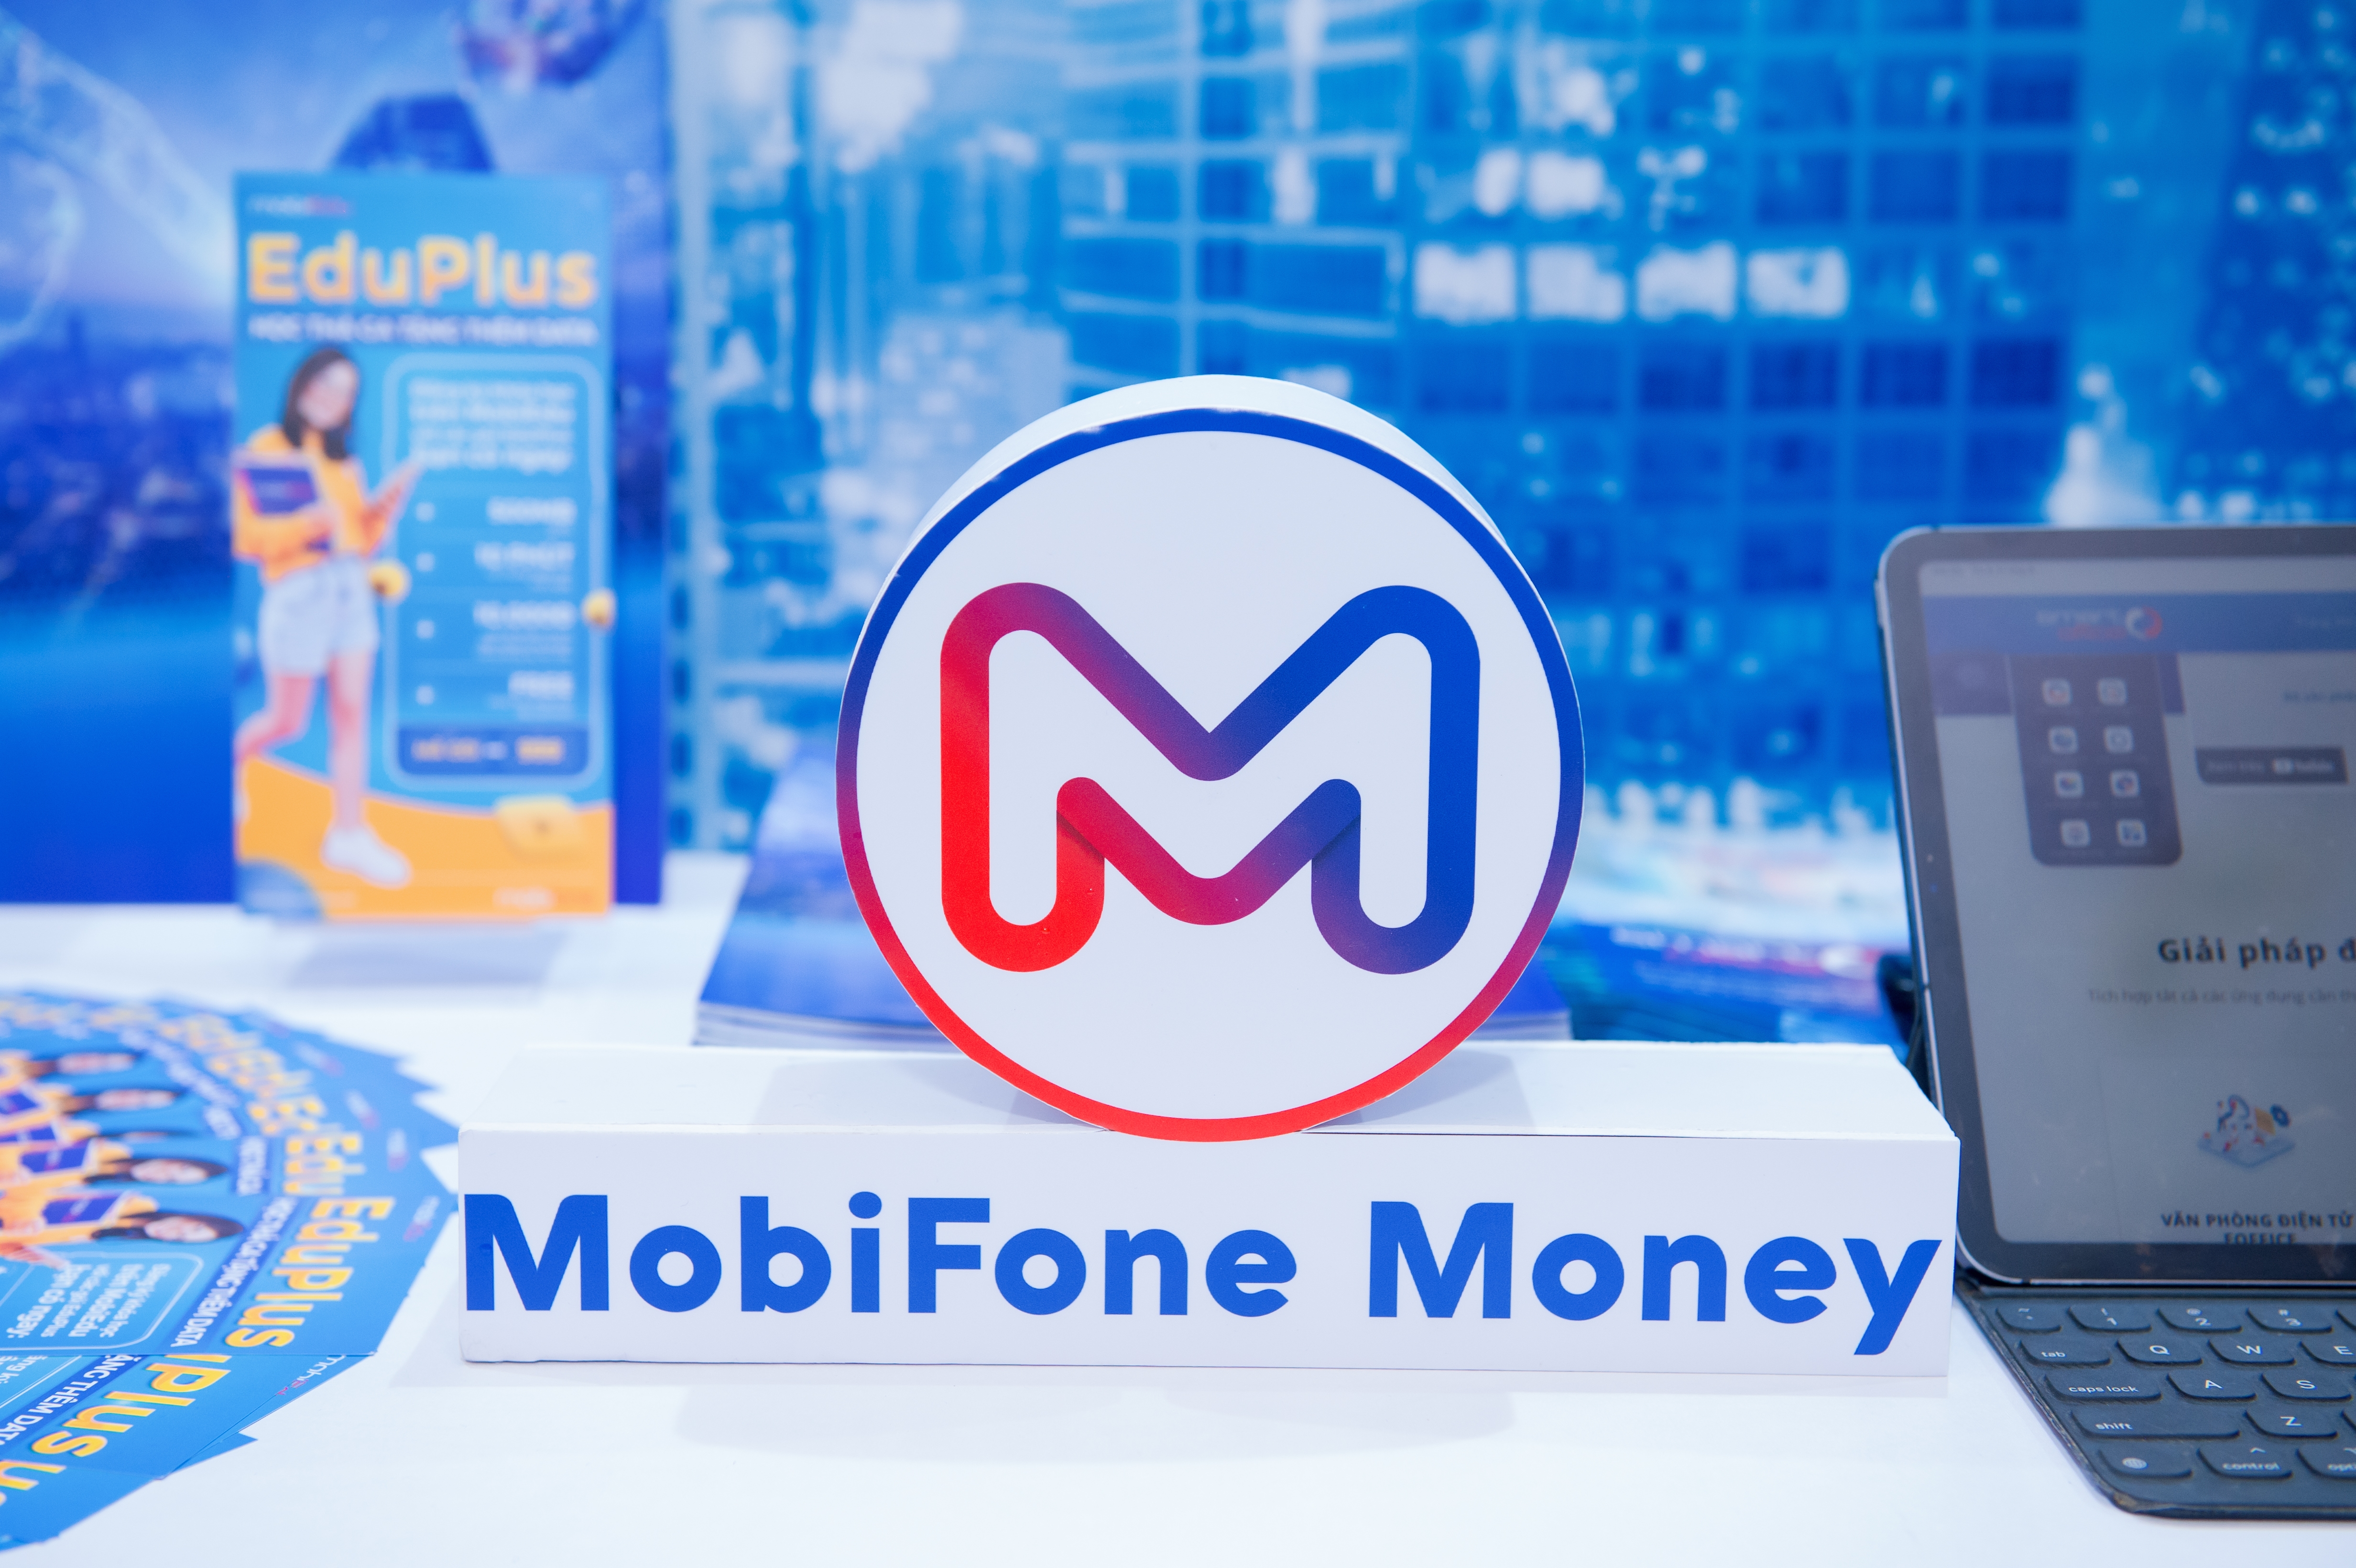 Chiết khấu cho thuê bao trả trước khi nạp tiền qua MobiFone Money 020122022_tnt-2573